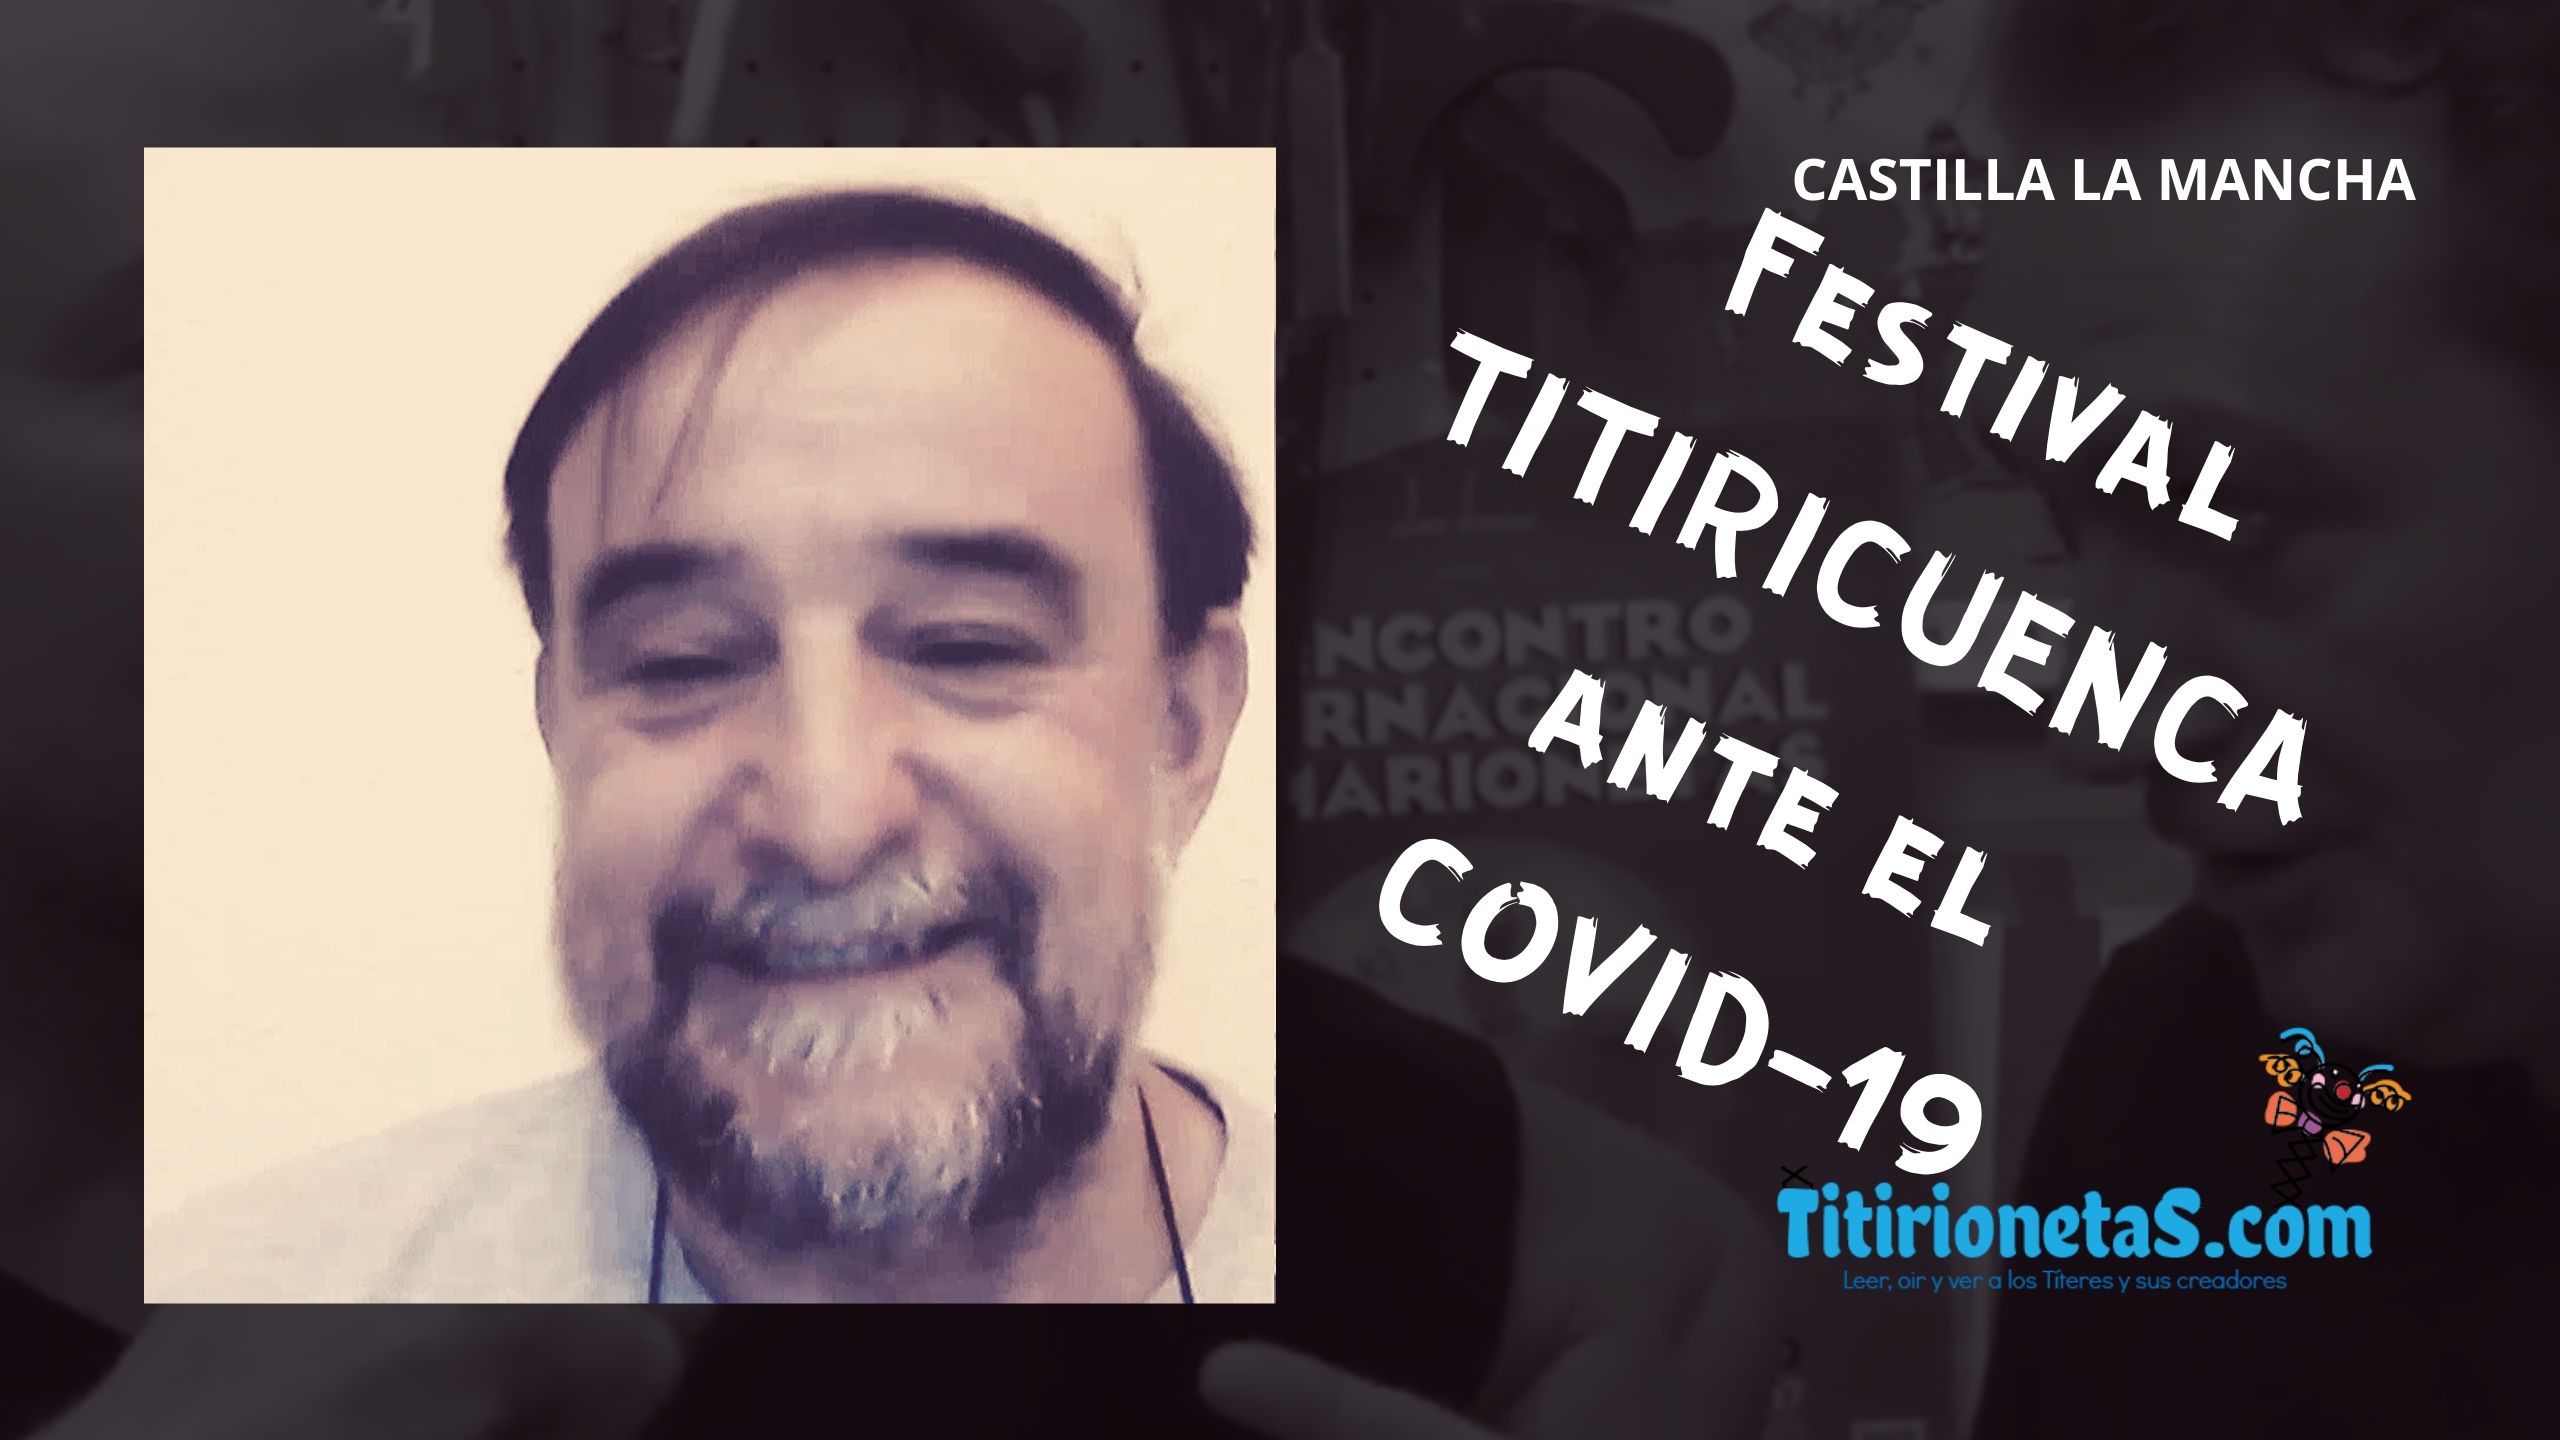 Festival TITIRICUENCA. Ángel Suárez-Castilla La Mancha ante el COVID-19